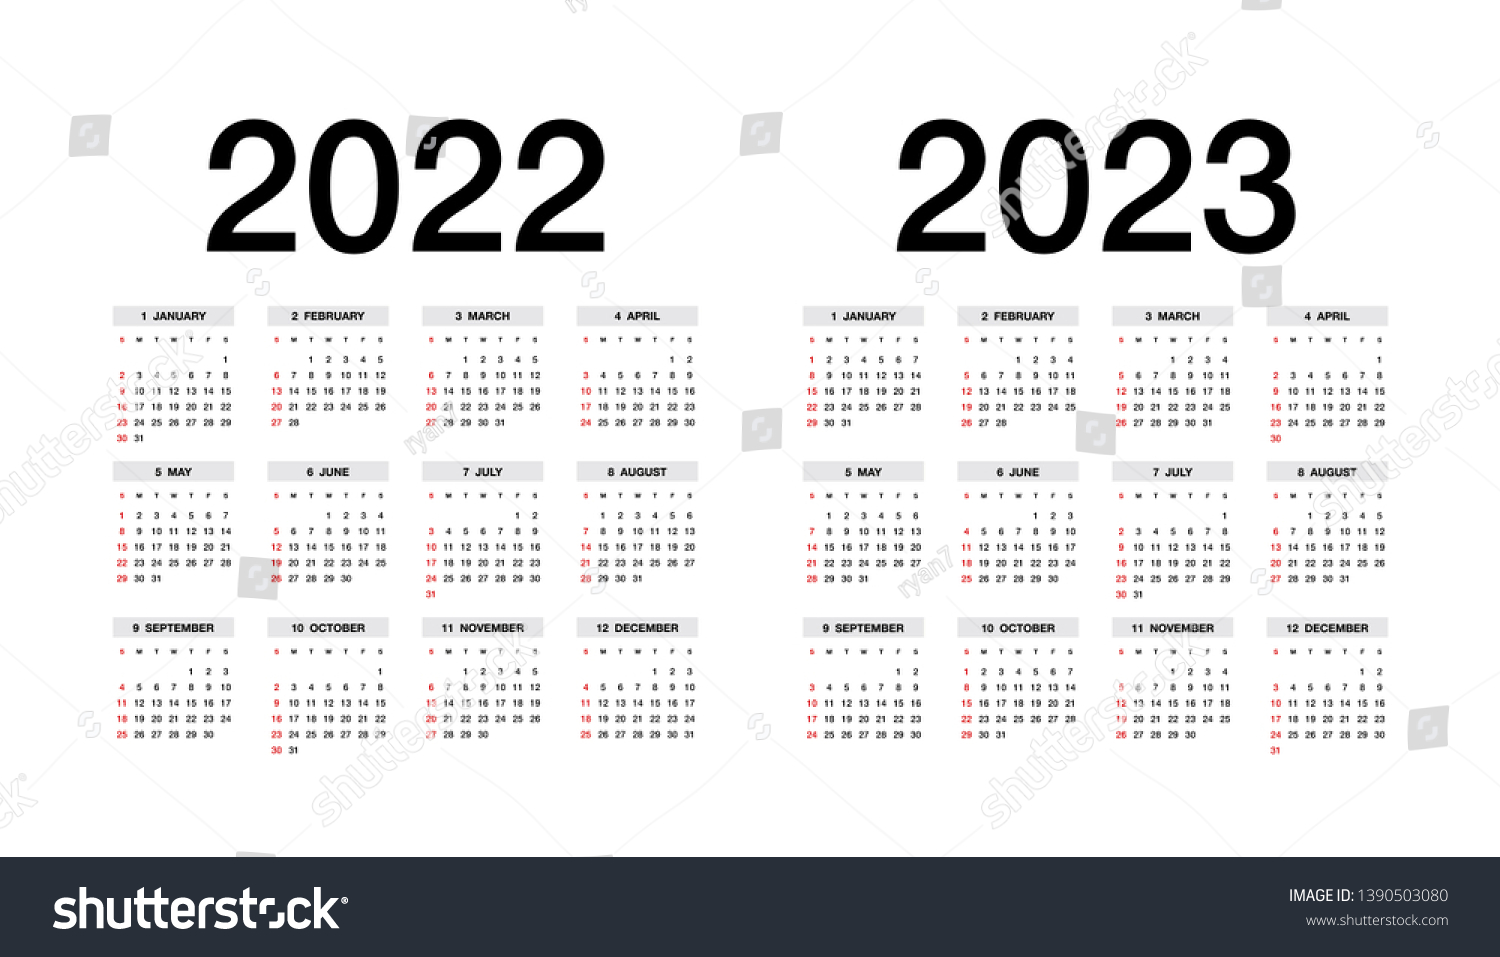 15 декабря 2023 год. Календарь 2022-2023. Календарь на 2023 год. Производственный календарь на 2022 и 2023 годы. Календарь на 2022-2023 учебный год.